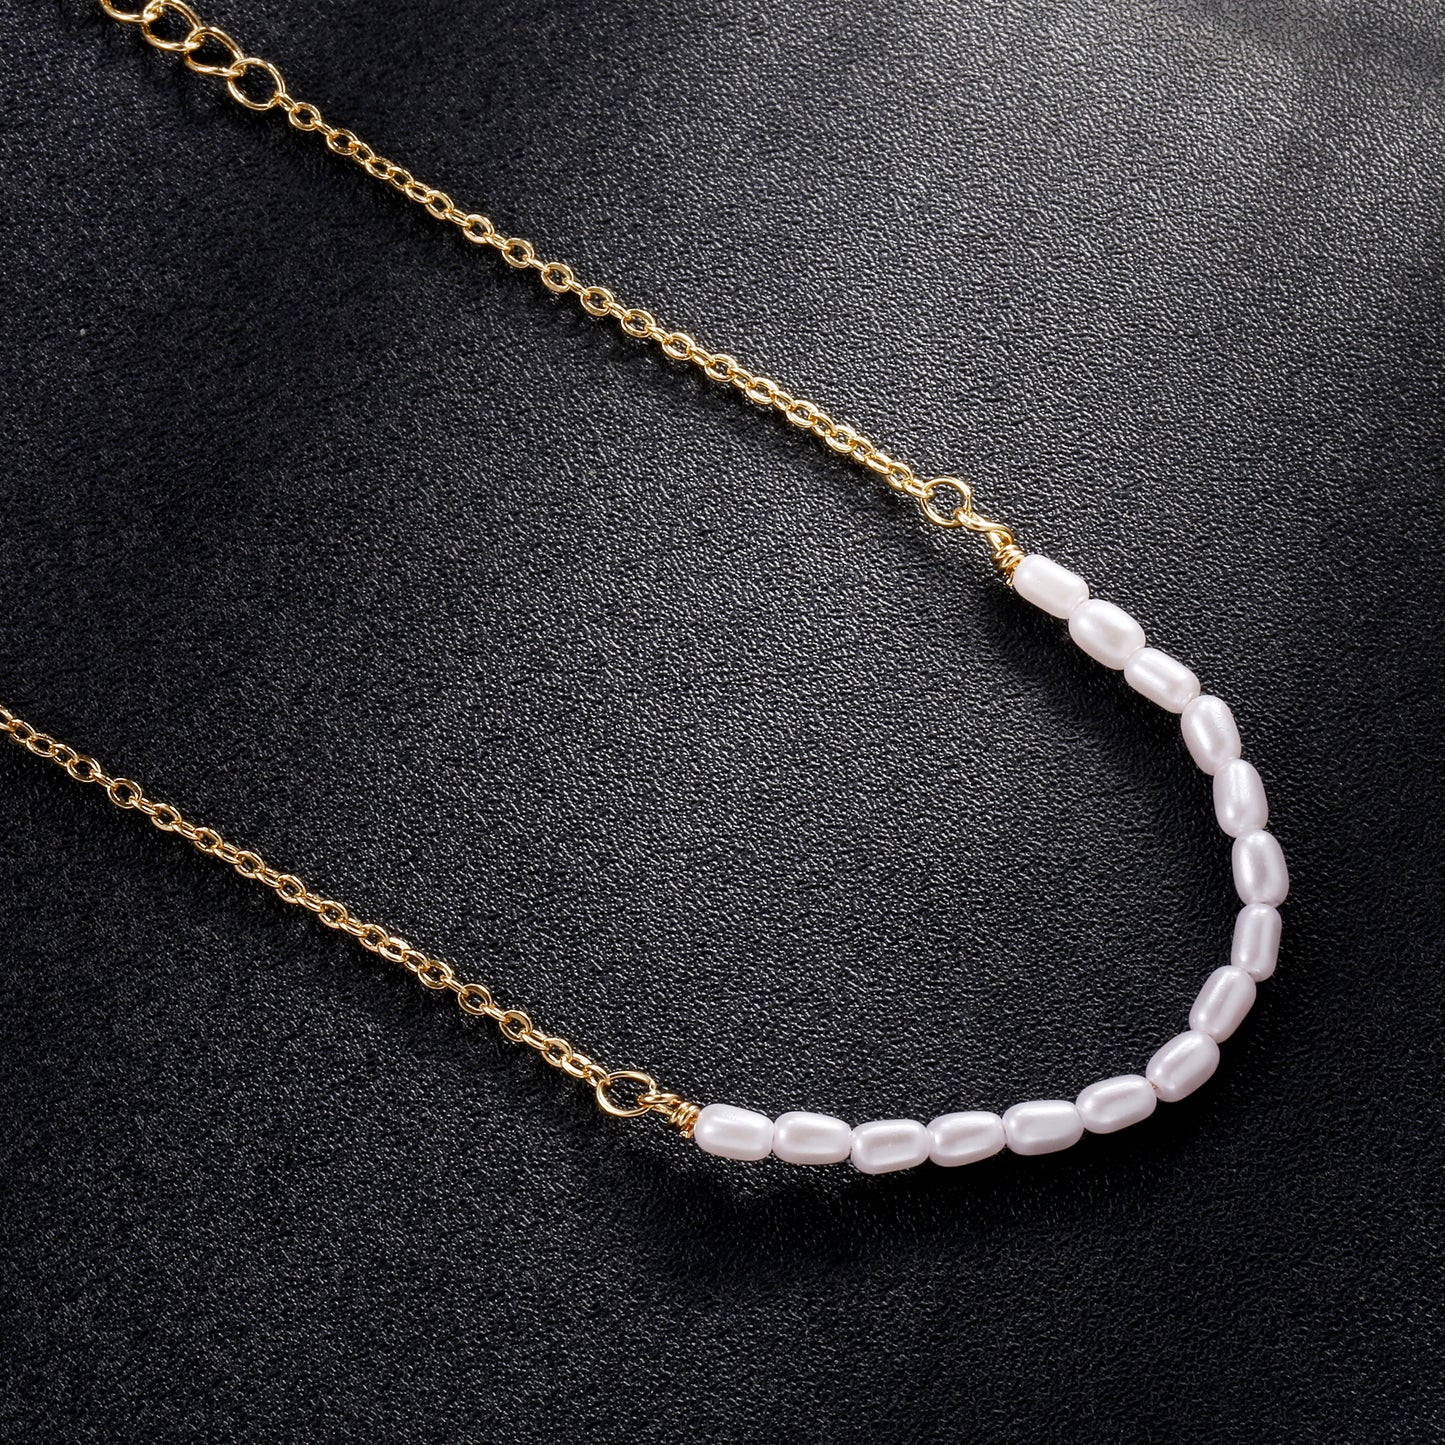 Tasiso 18k Gold Plated Pearl Chain Link Bracelet